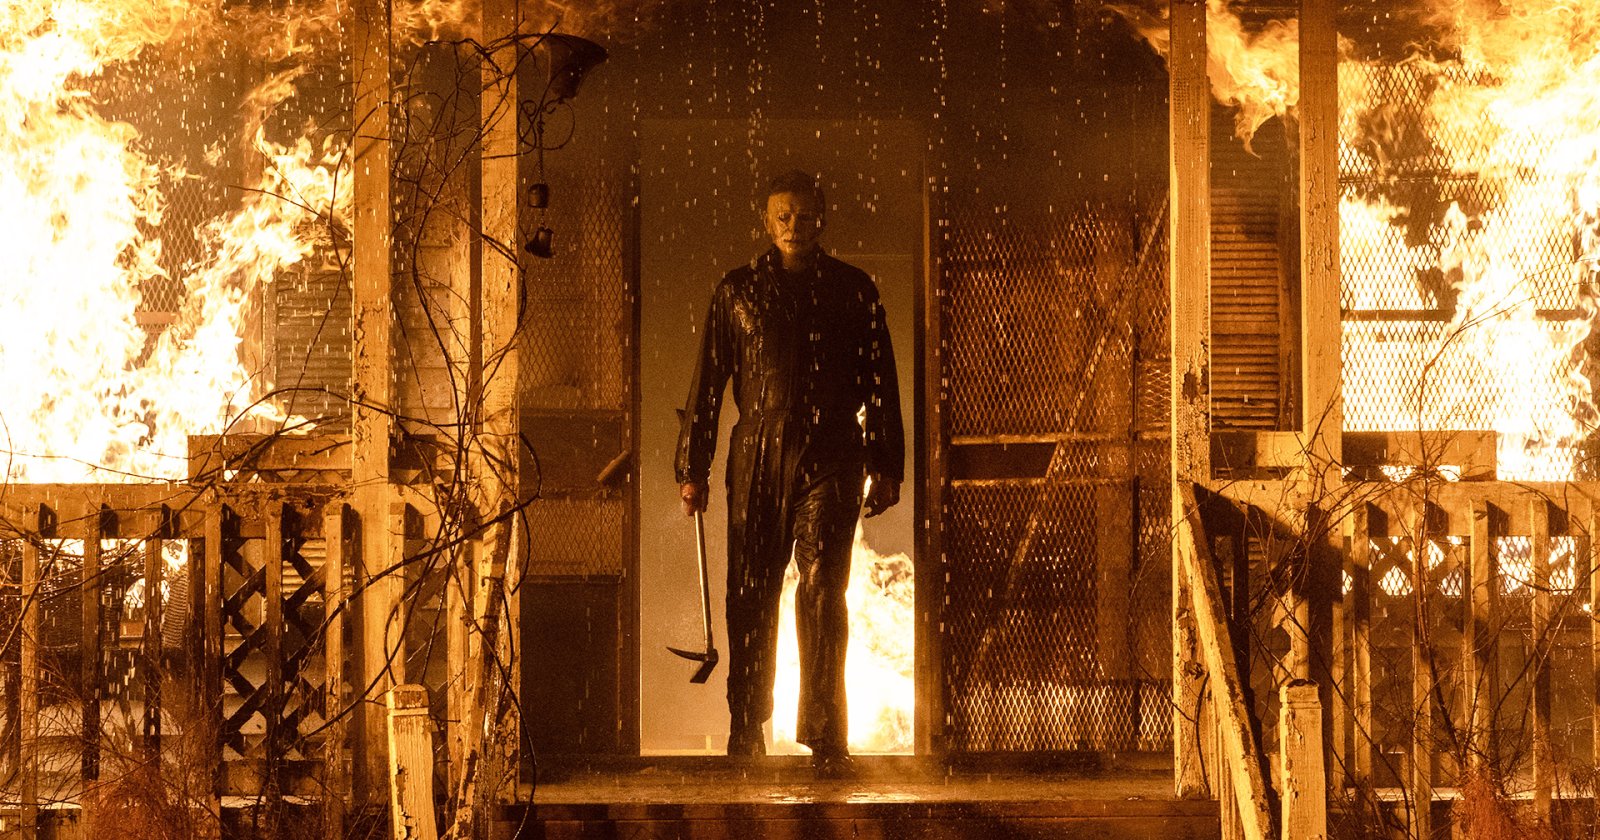 John Carpenter ผู้กำกับ ‘Halloween’ ต้นฉบับ เลือก ‘Halloween Kills’ เป็นหนังที่ชอบที่สุดในไตรภาครีบูตนี้